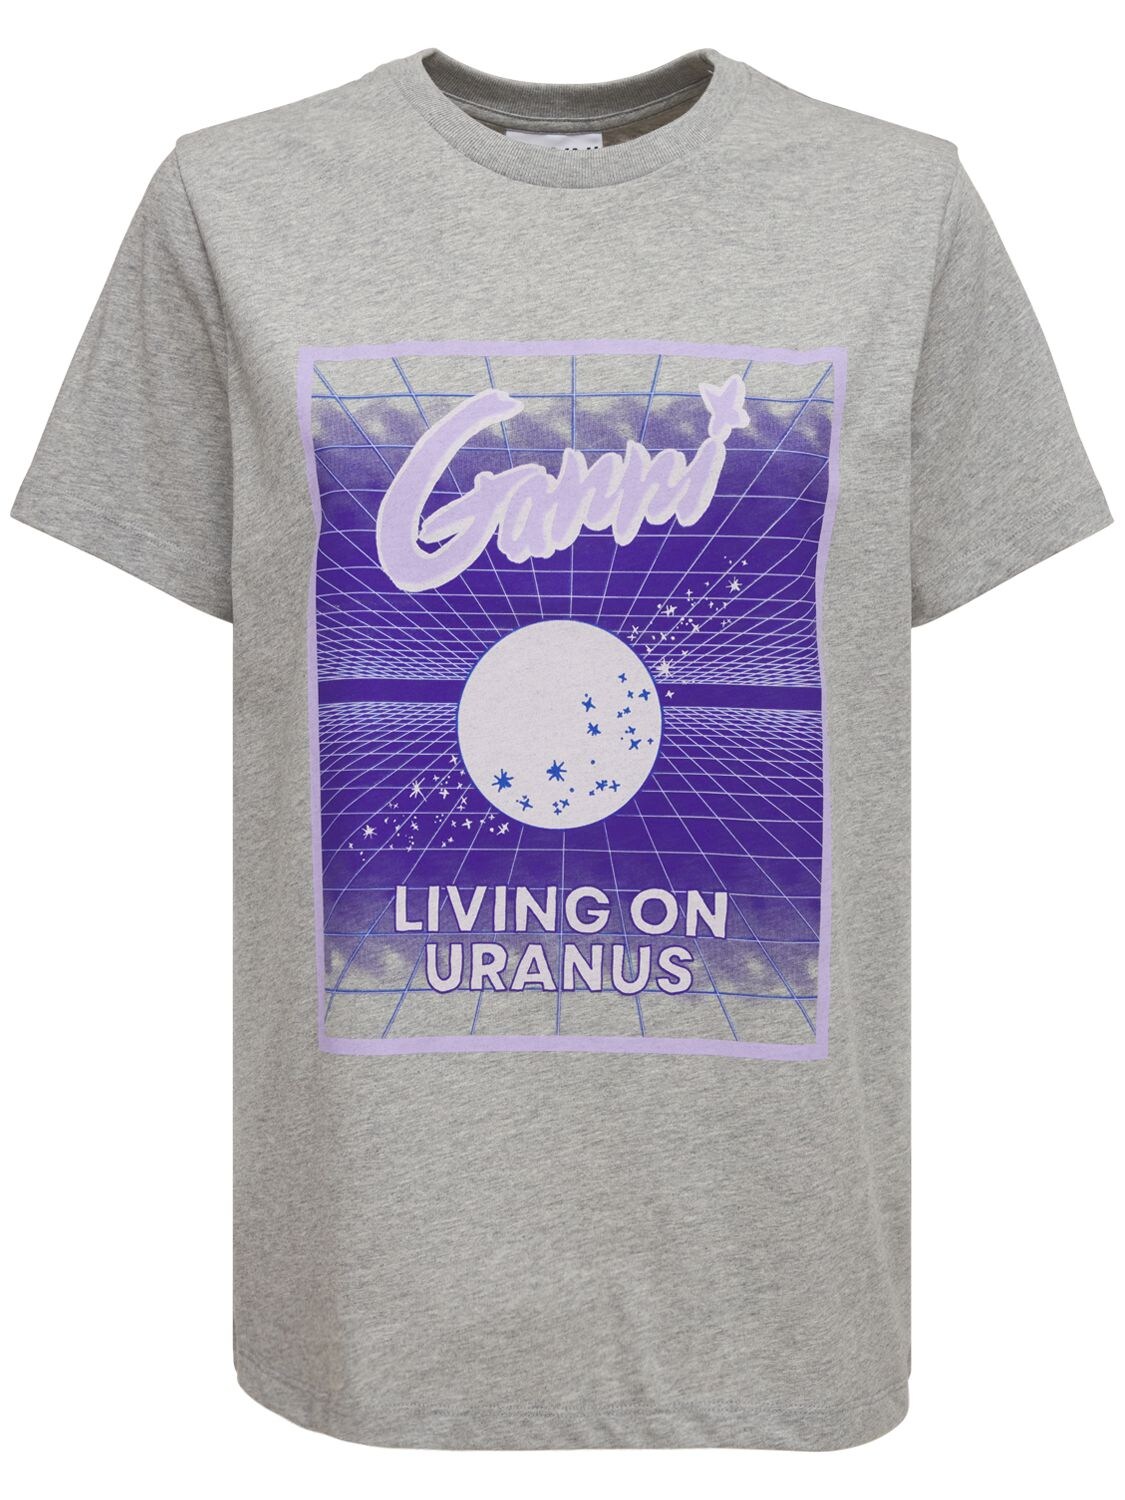 Uranus Organic Cotton T-shirt